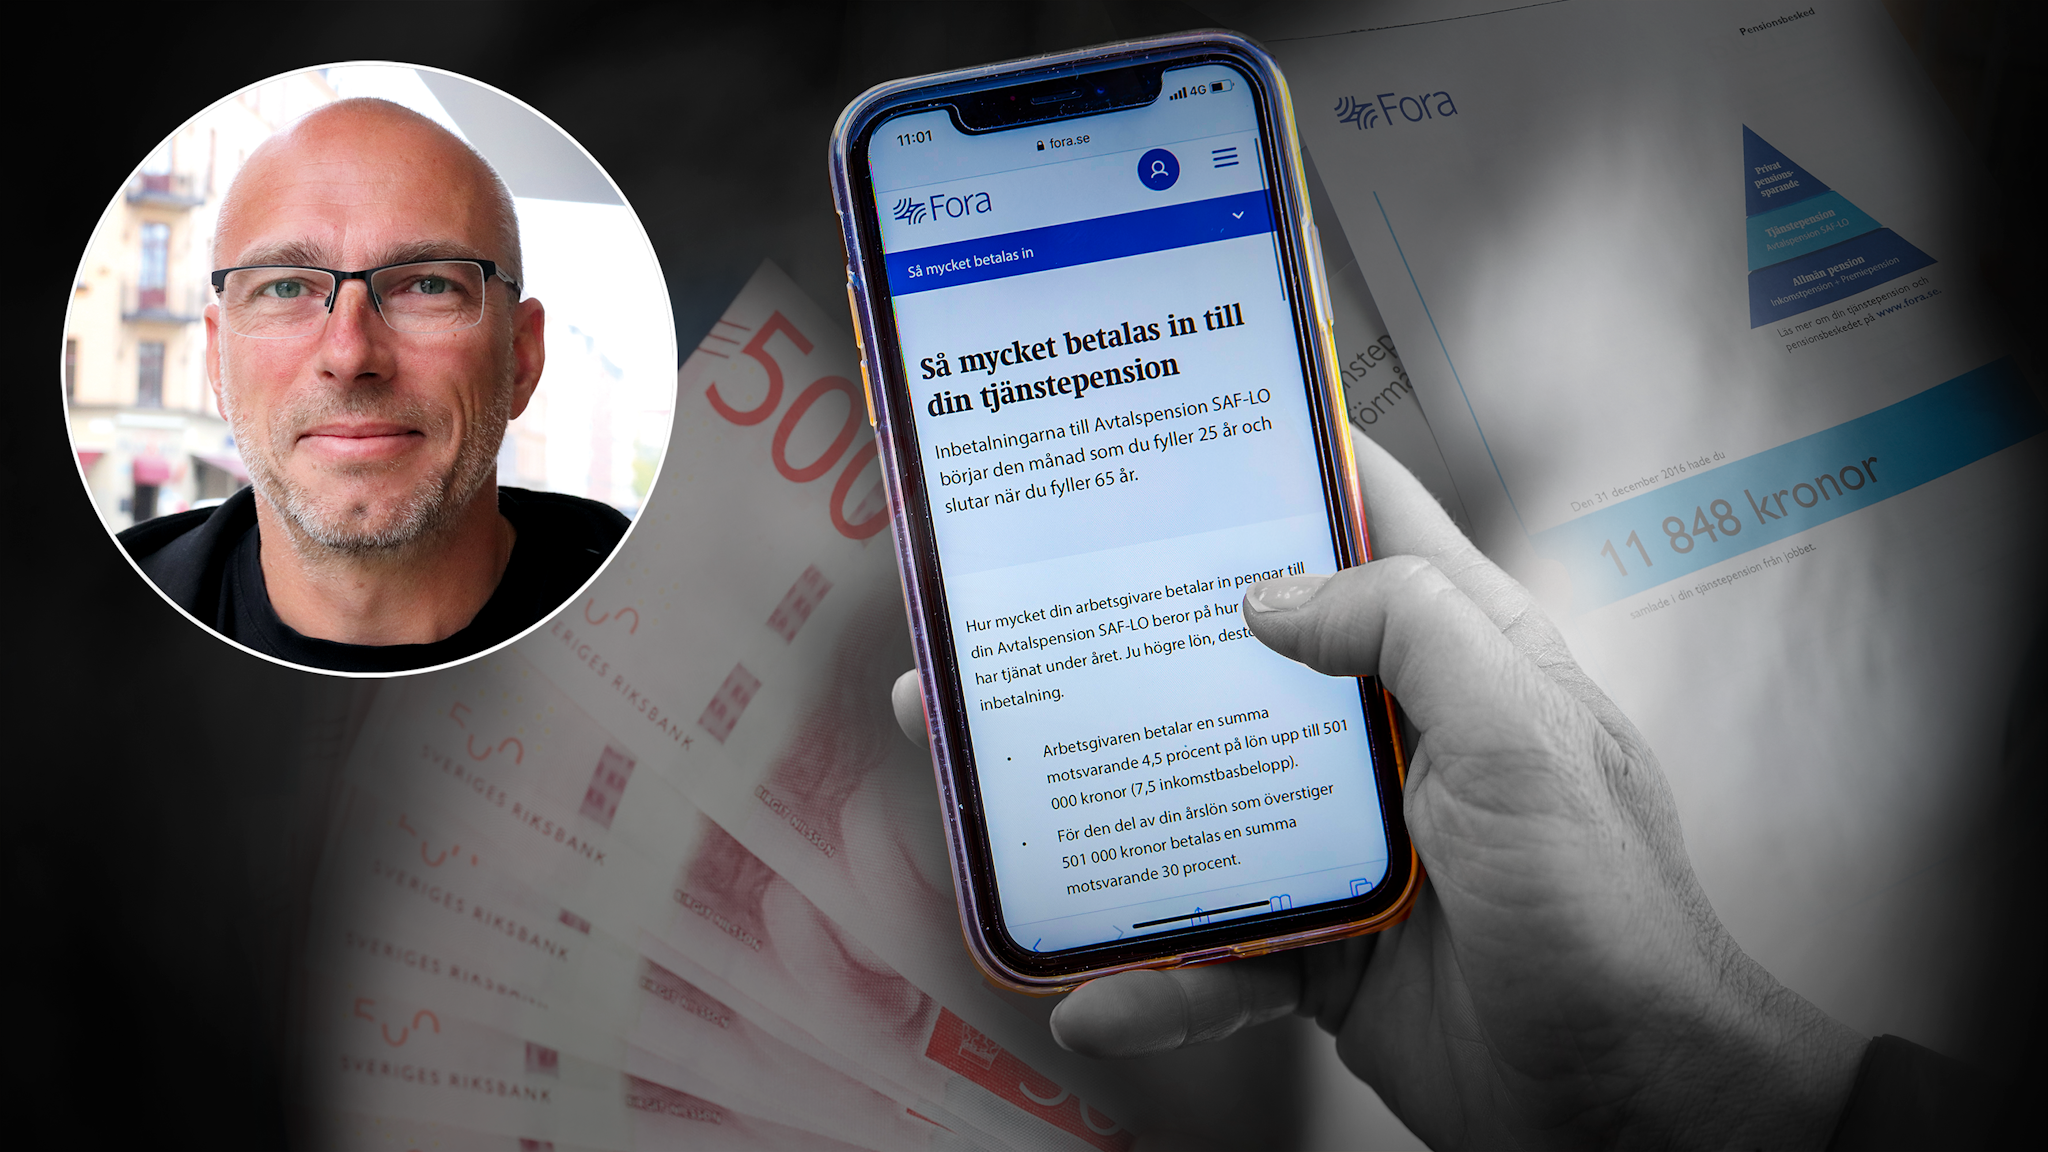 En bild på Michael Bentin monterad invid en mobilskärm med Foras hemsida, omgiven av sedlar och pensionsbesked.